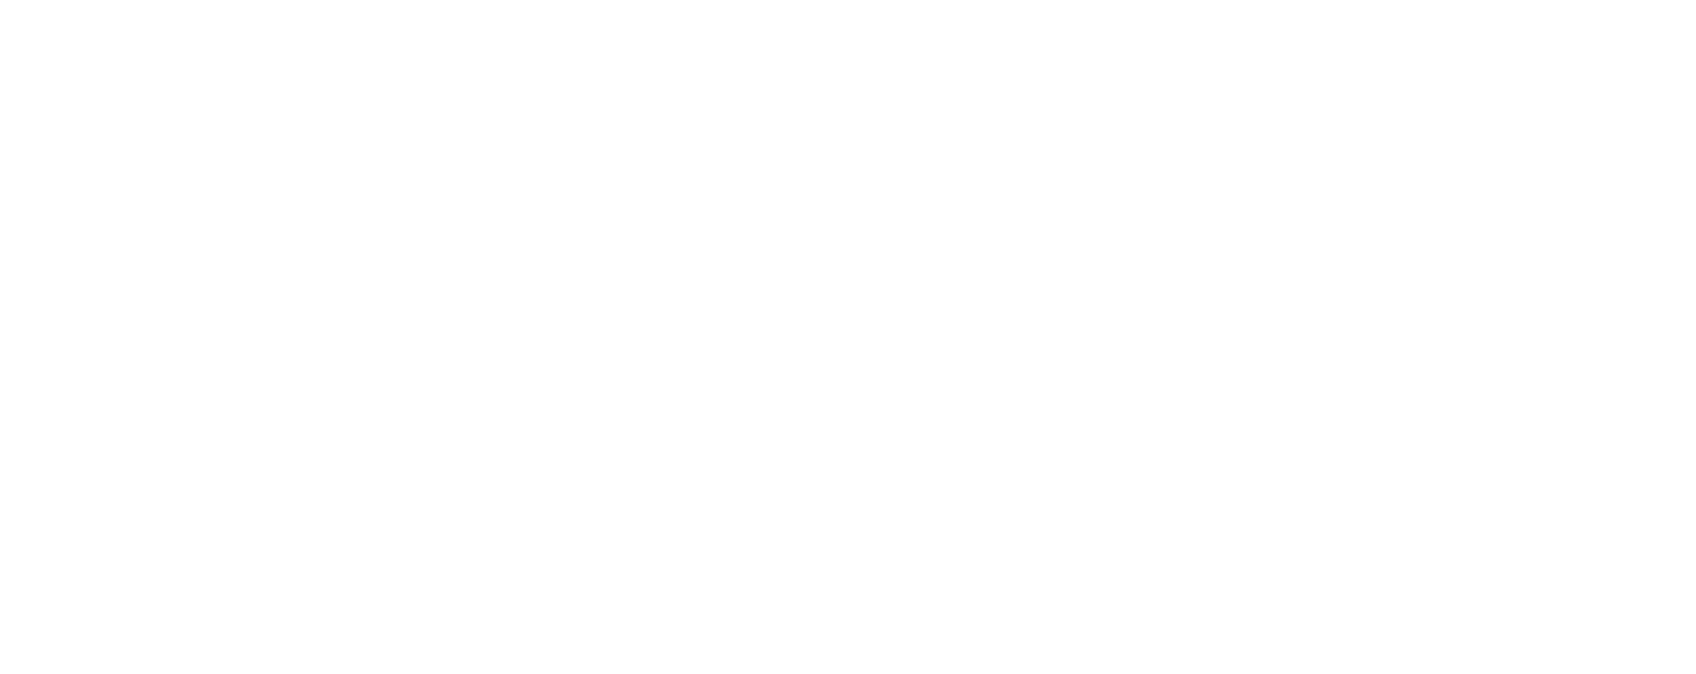 kfcl logo 2